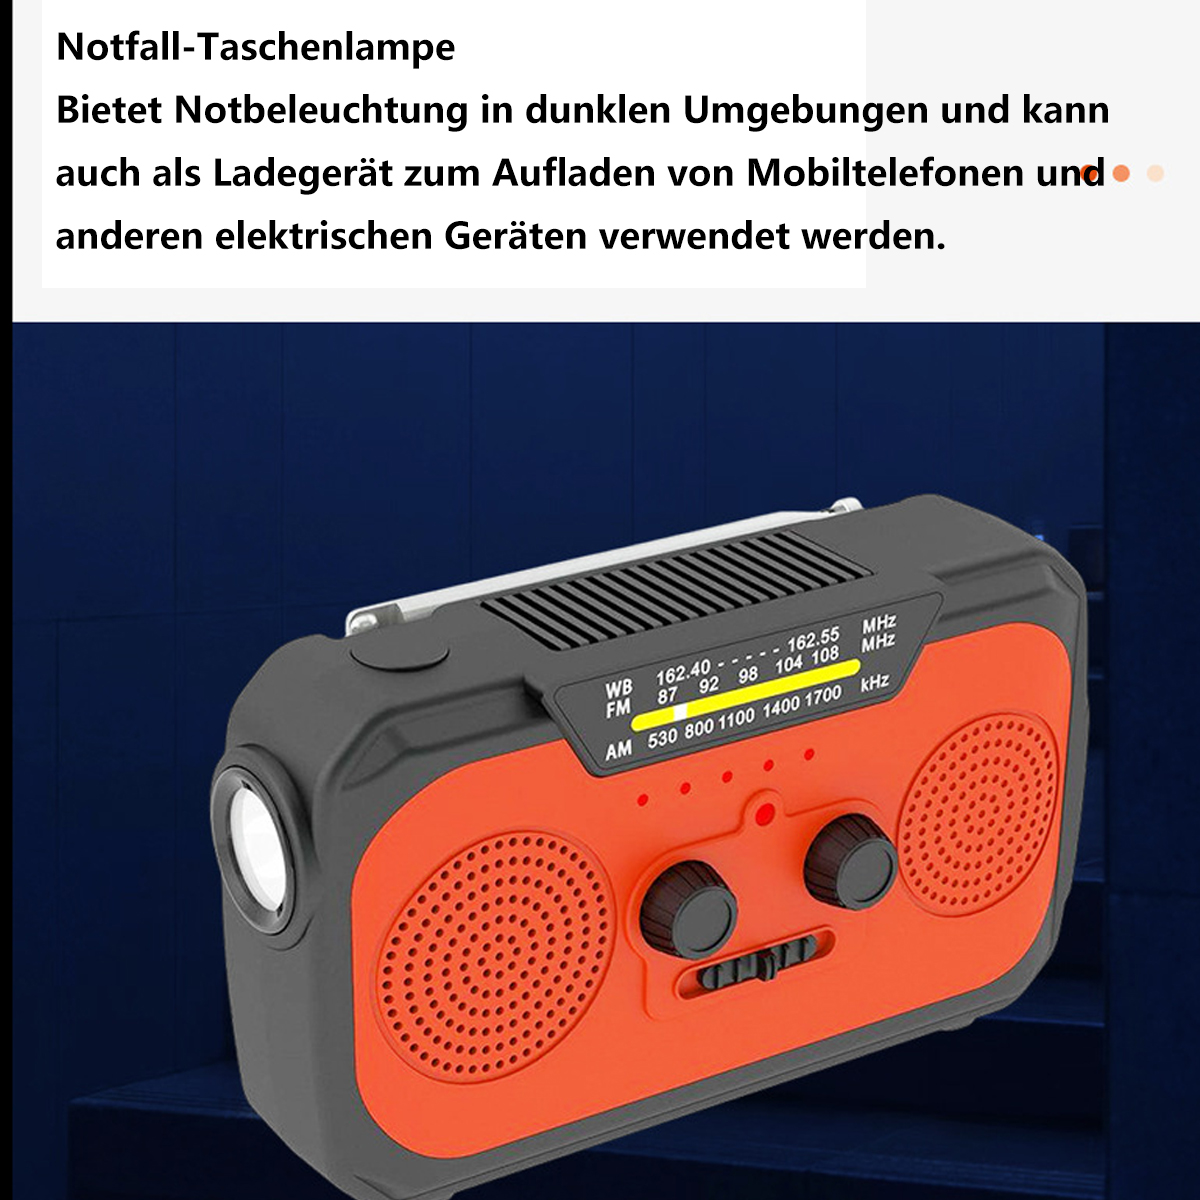 SYNTEK Radio Gelb Multifunktions-Handkurbel Stromerzeuger AM, gelb Solarradio FM, mit Internetradio, Notrufempfänger